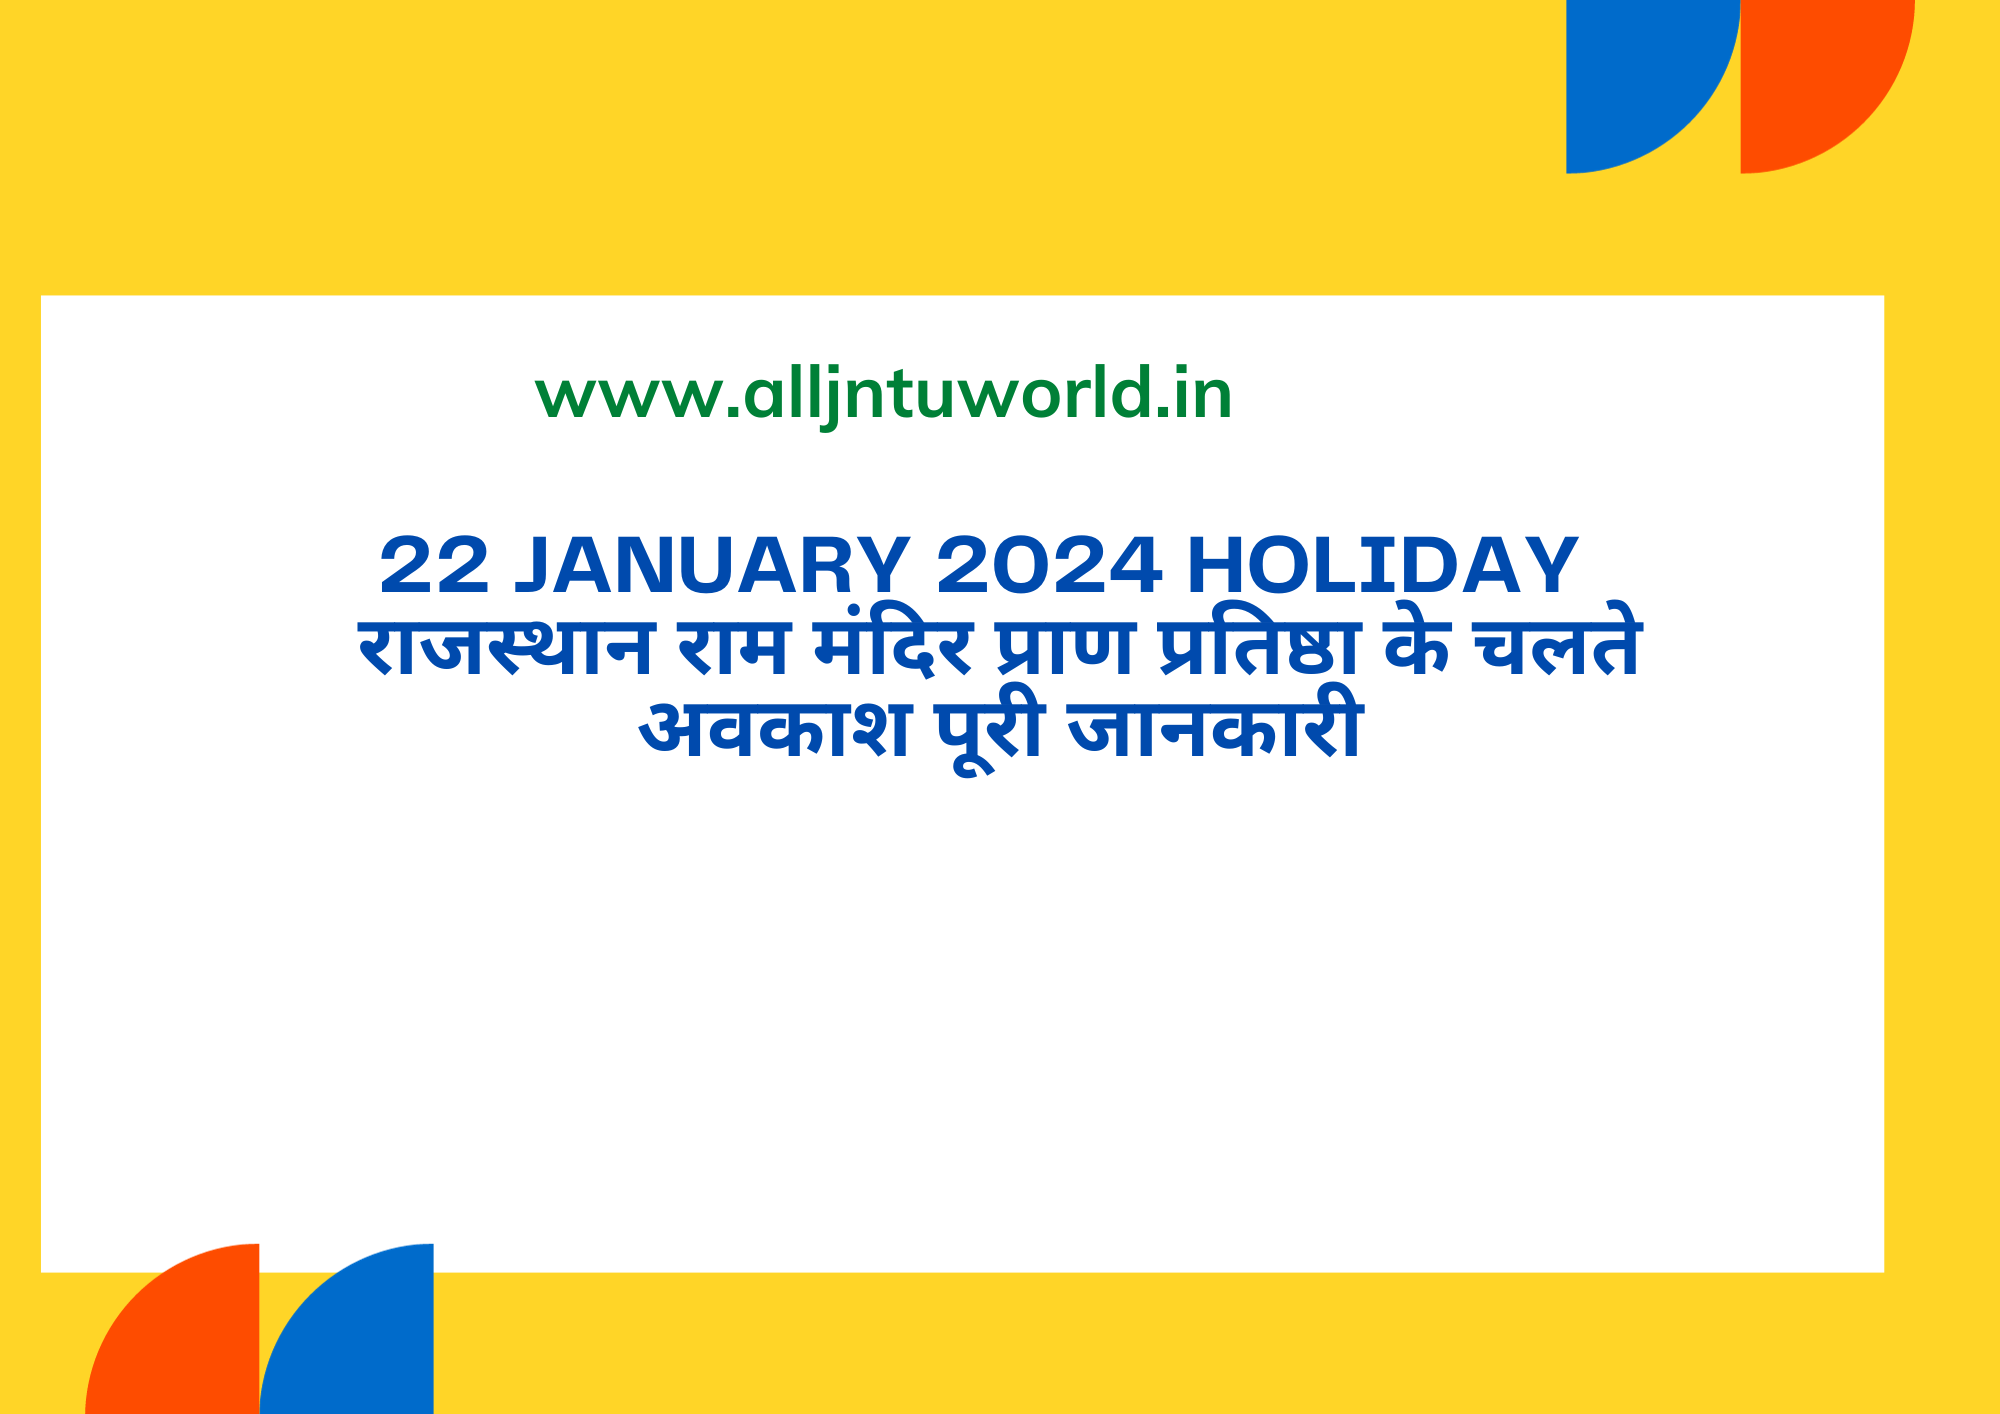 22 January 2024 Holiday in Rajasthan राम मंदिर प्राण प्रतिष्ठा के चलते